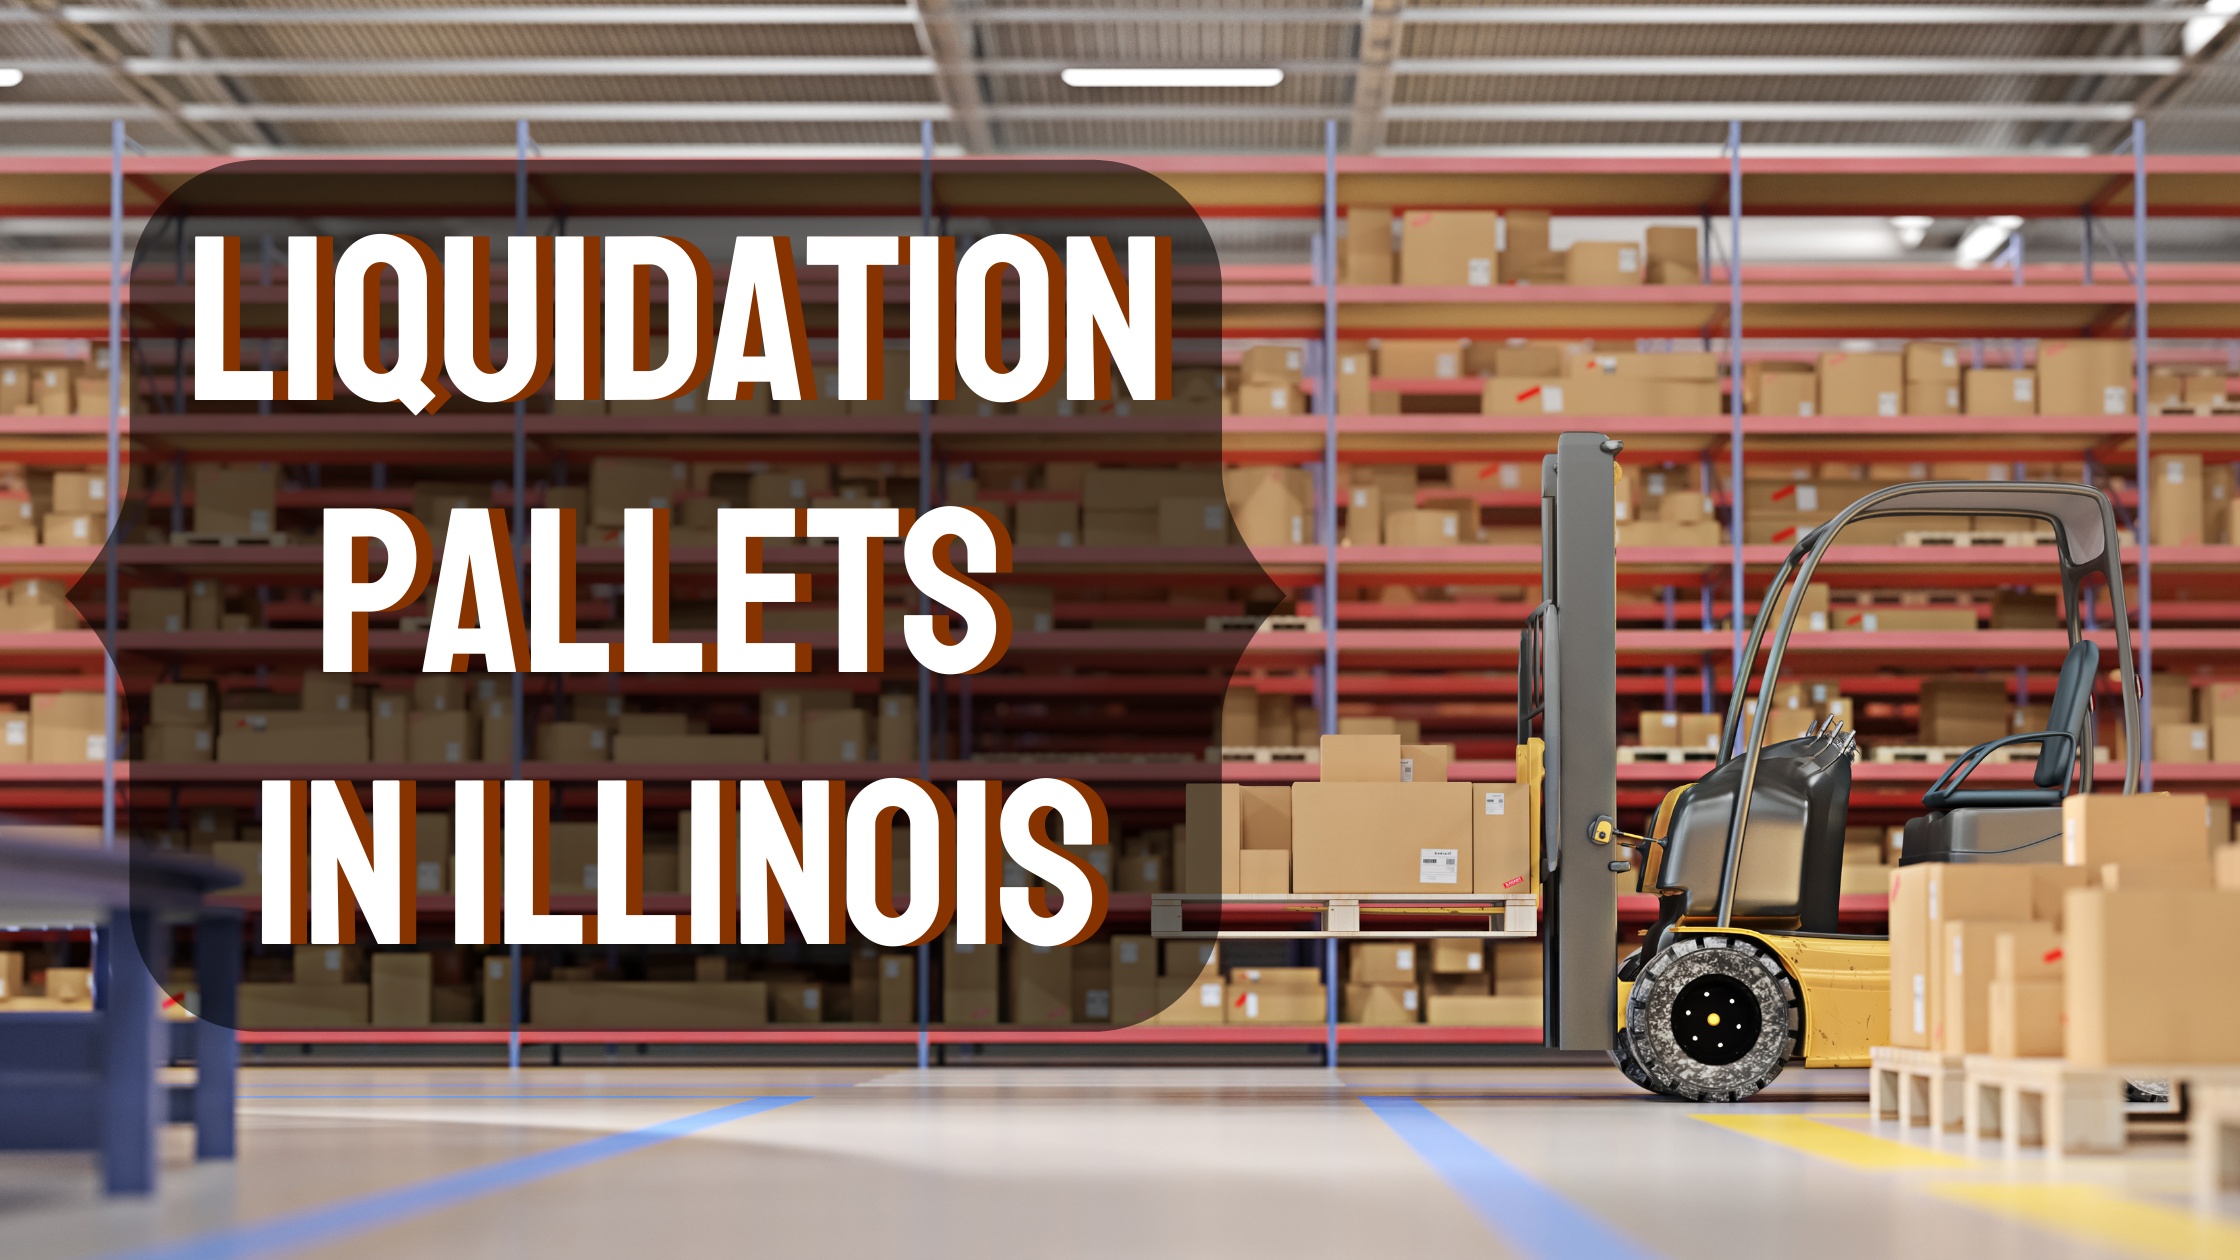 Liquidation Pallets in Illinois